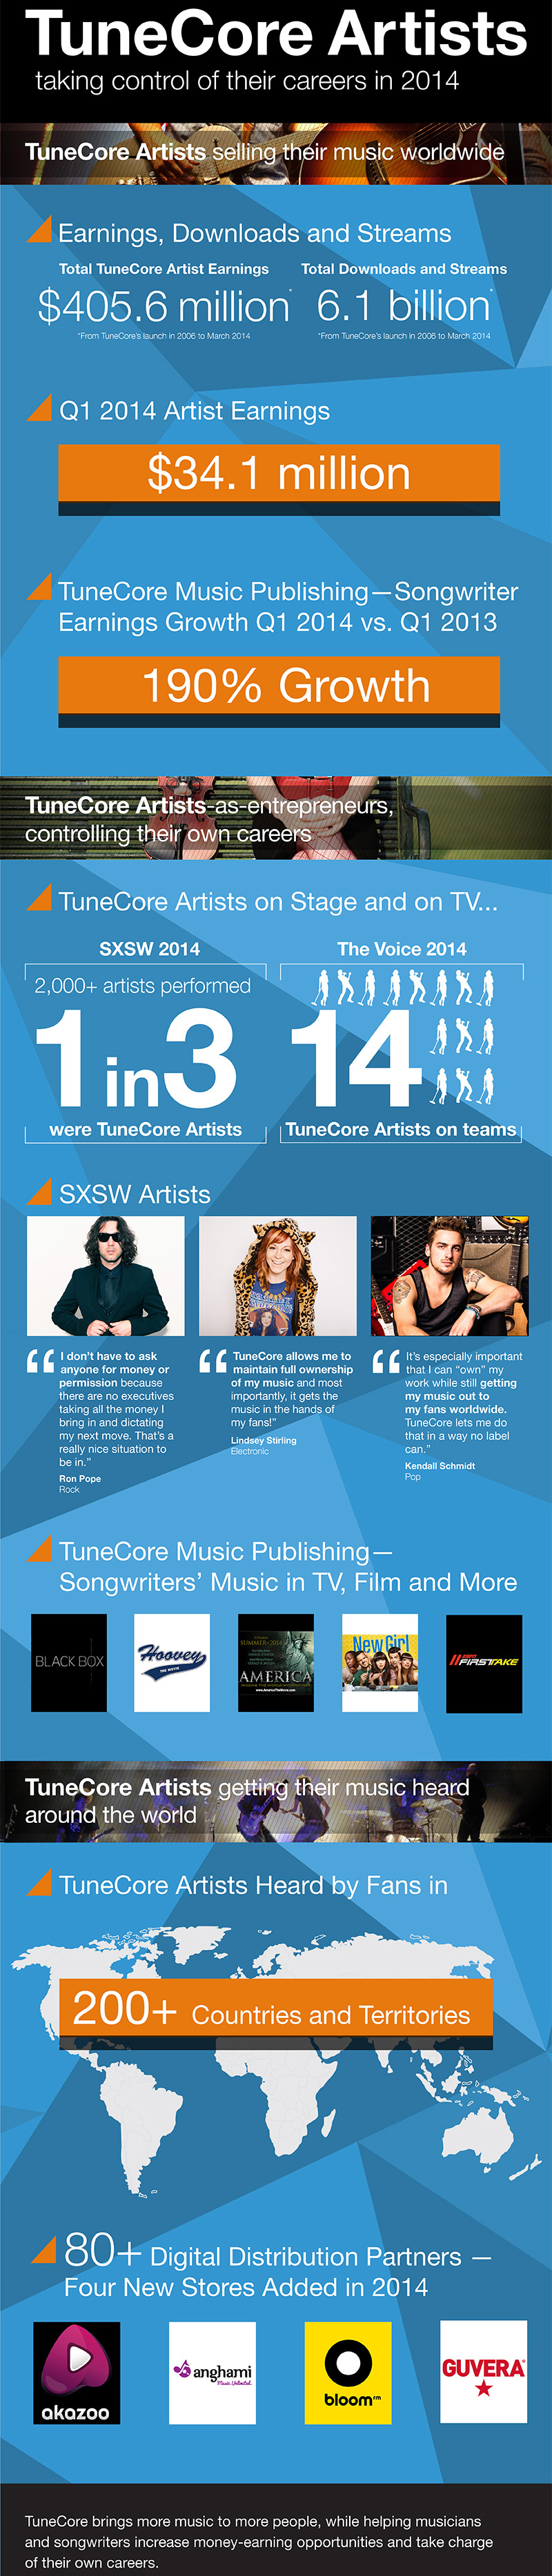 2014 TuneCore Artist Milestones